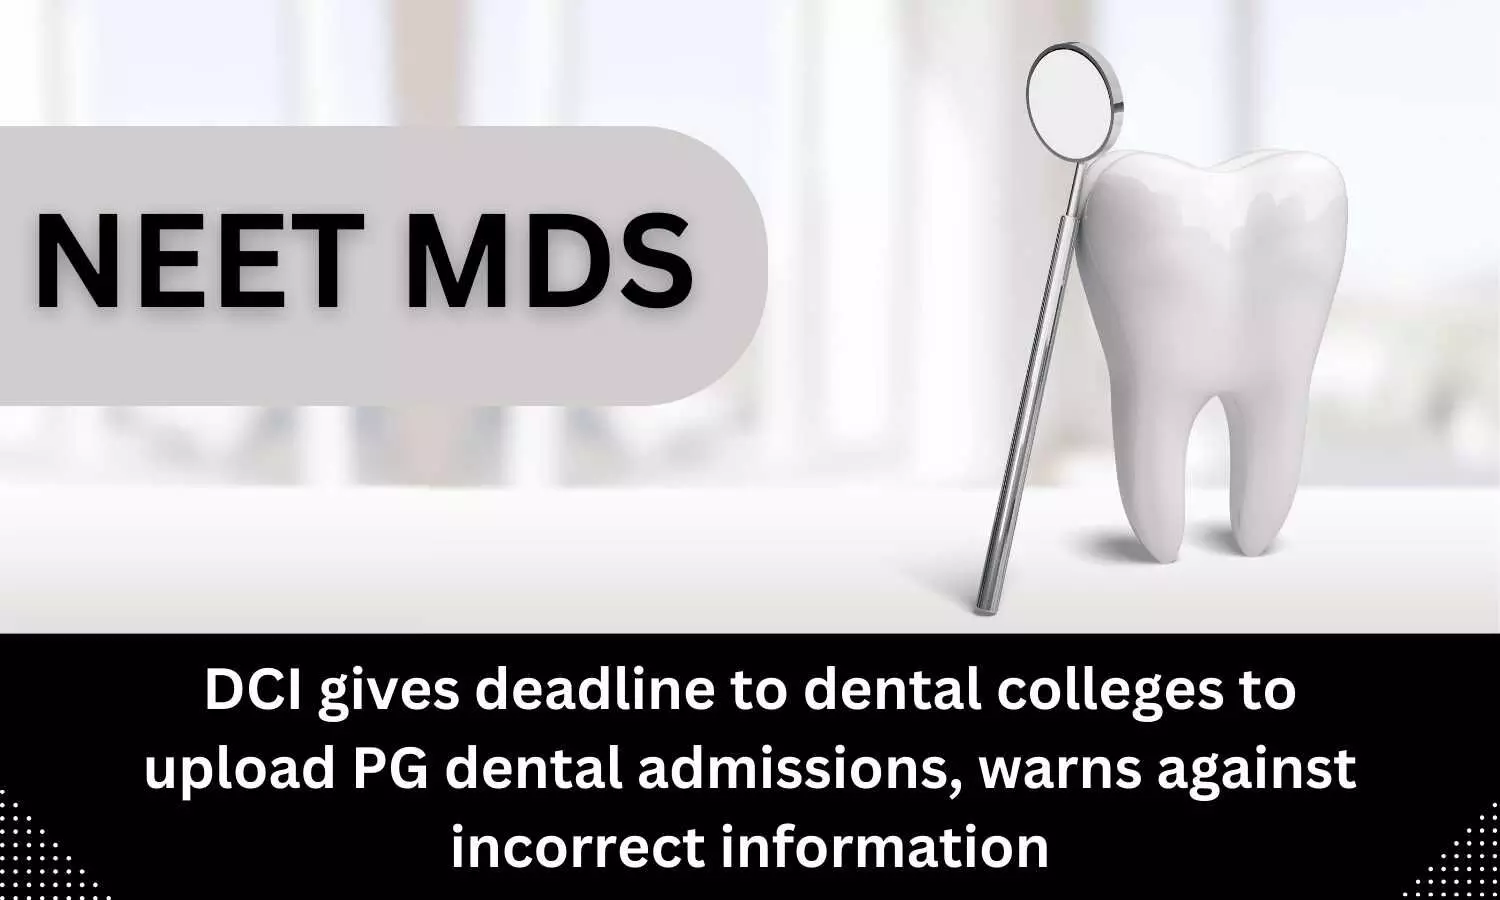 Dental colleges gets deadline from DCI for uploading PG dental admissions